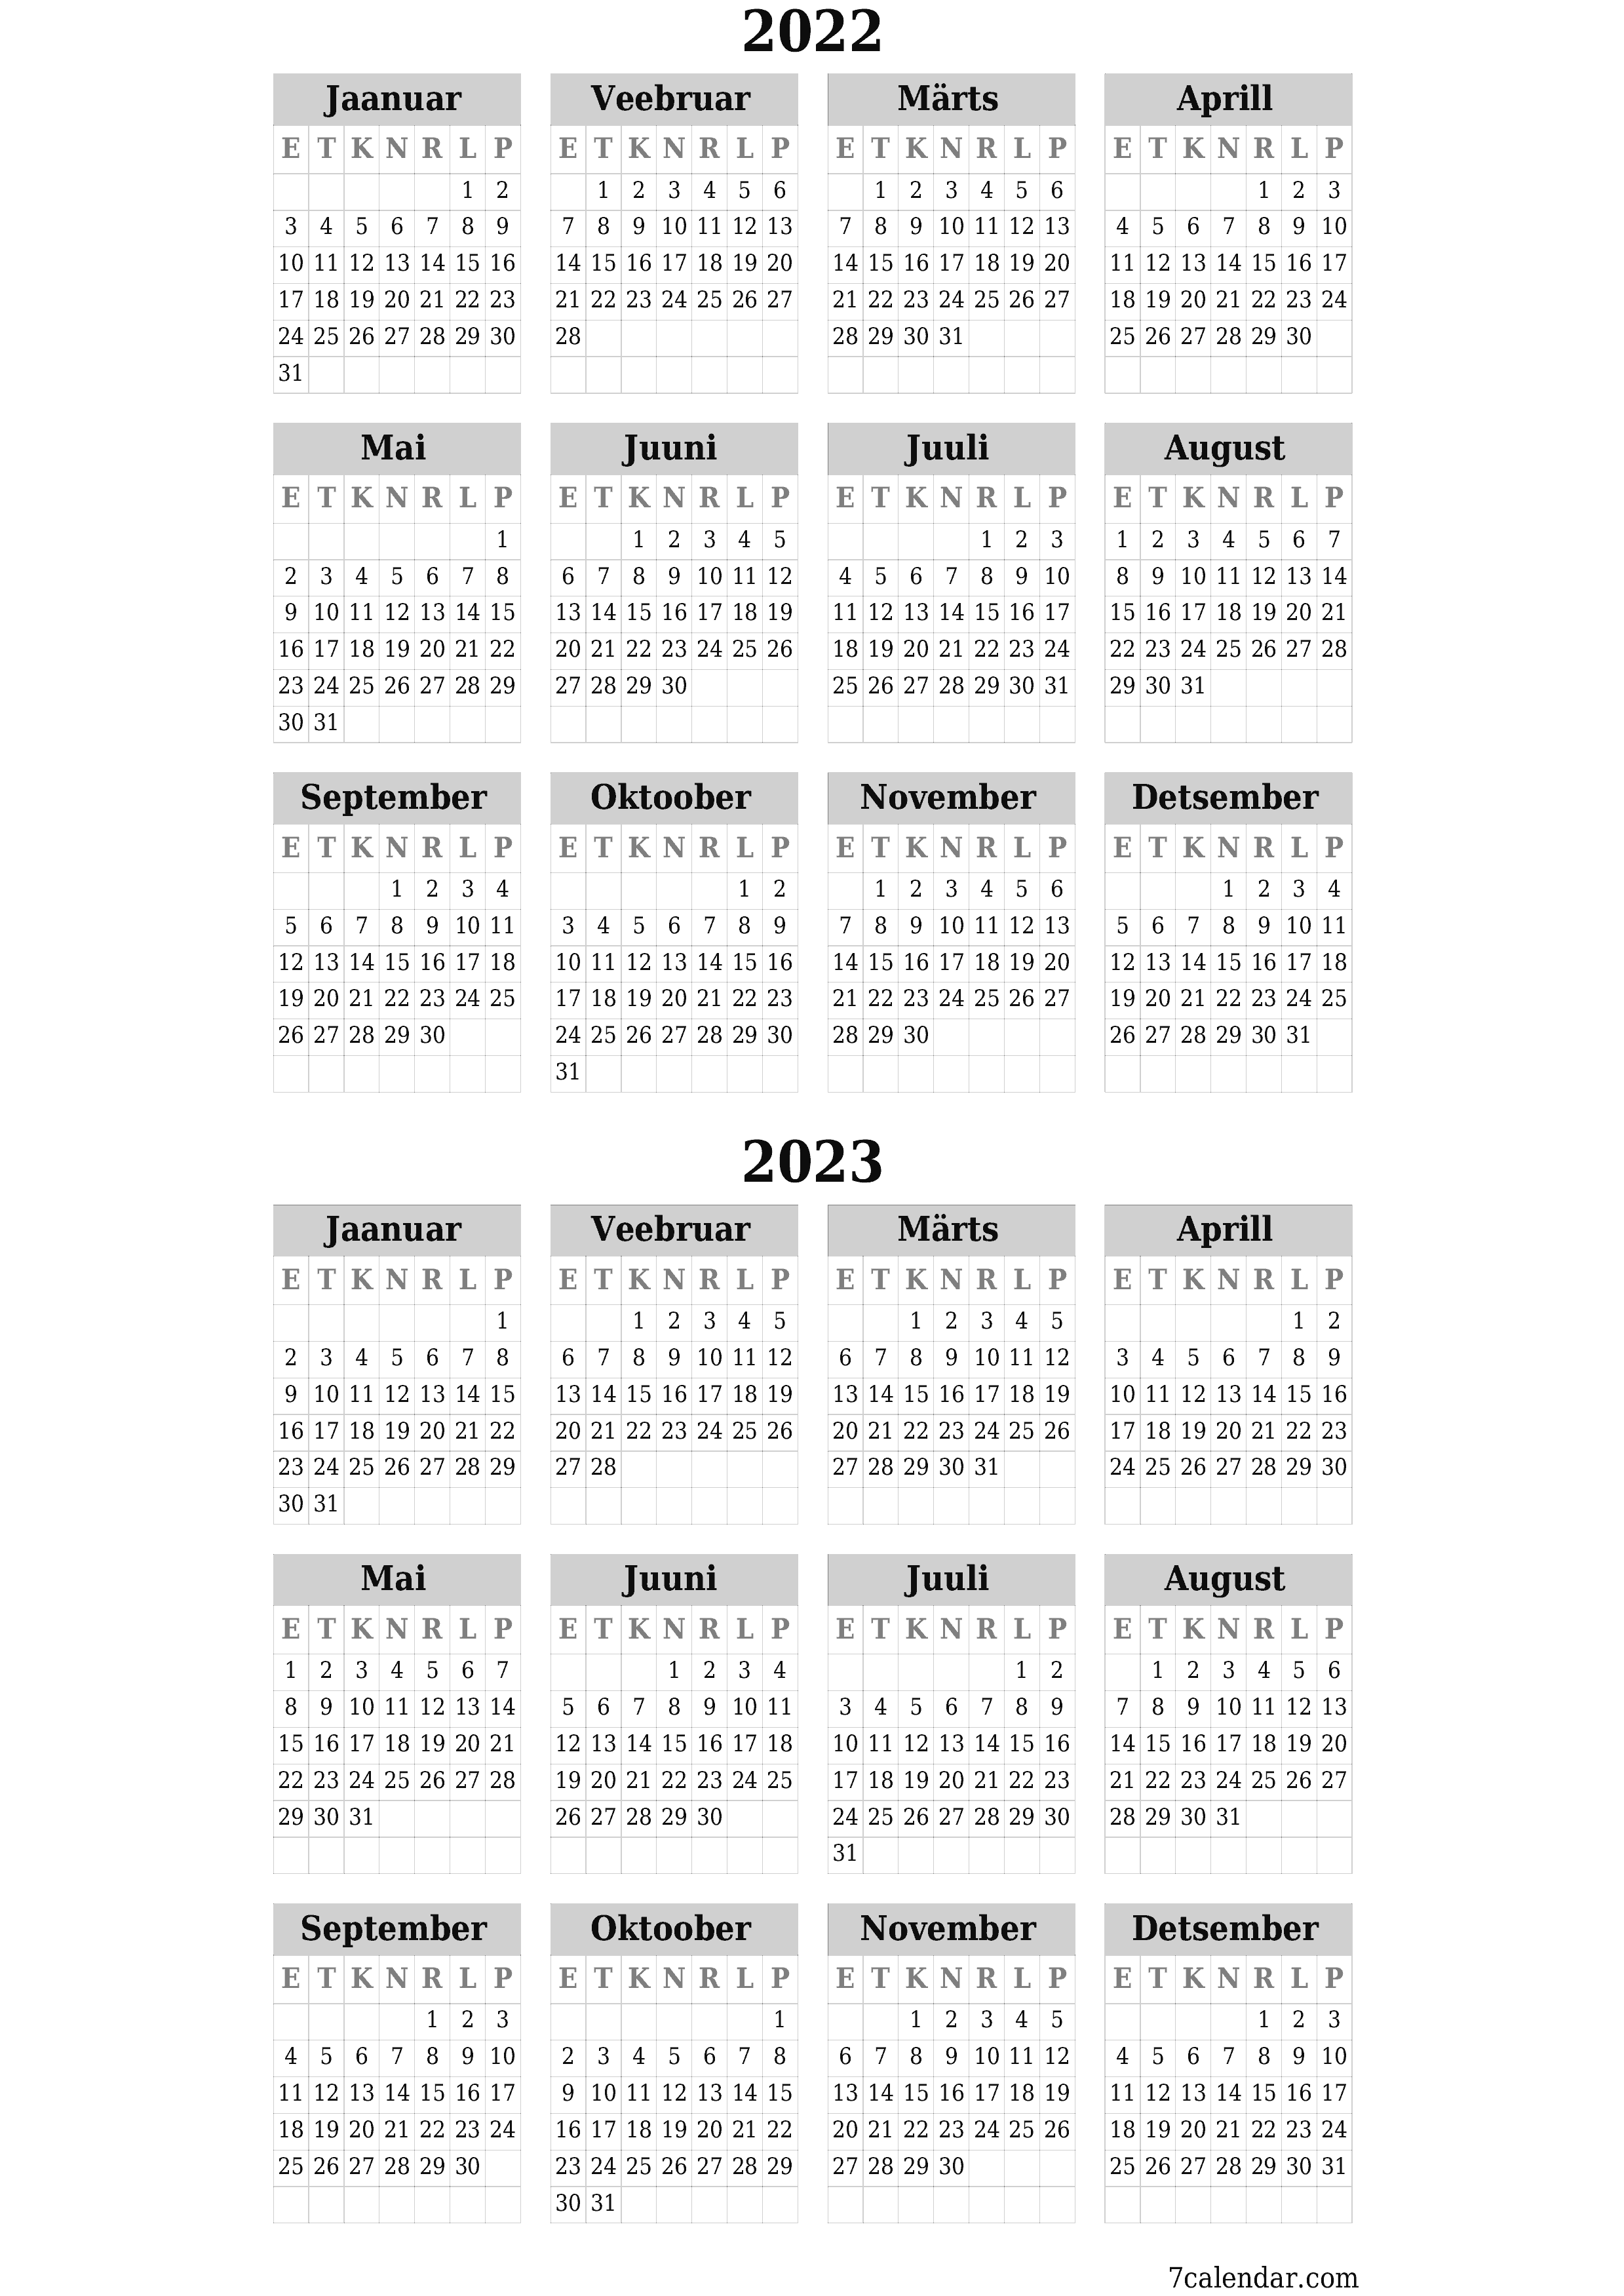 prinditav seina kalendri mall tasuta vertikaalne Iga-aastane kalender September (Sept) 2022